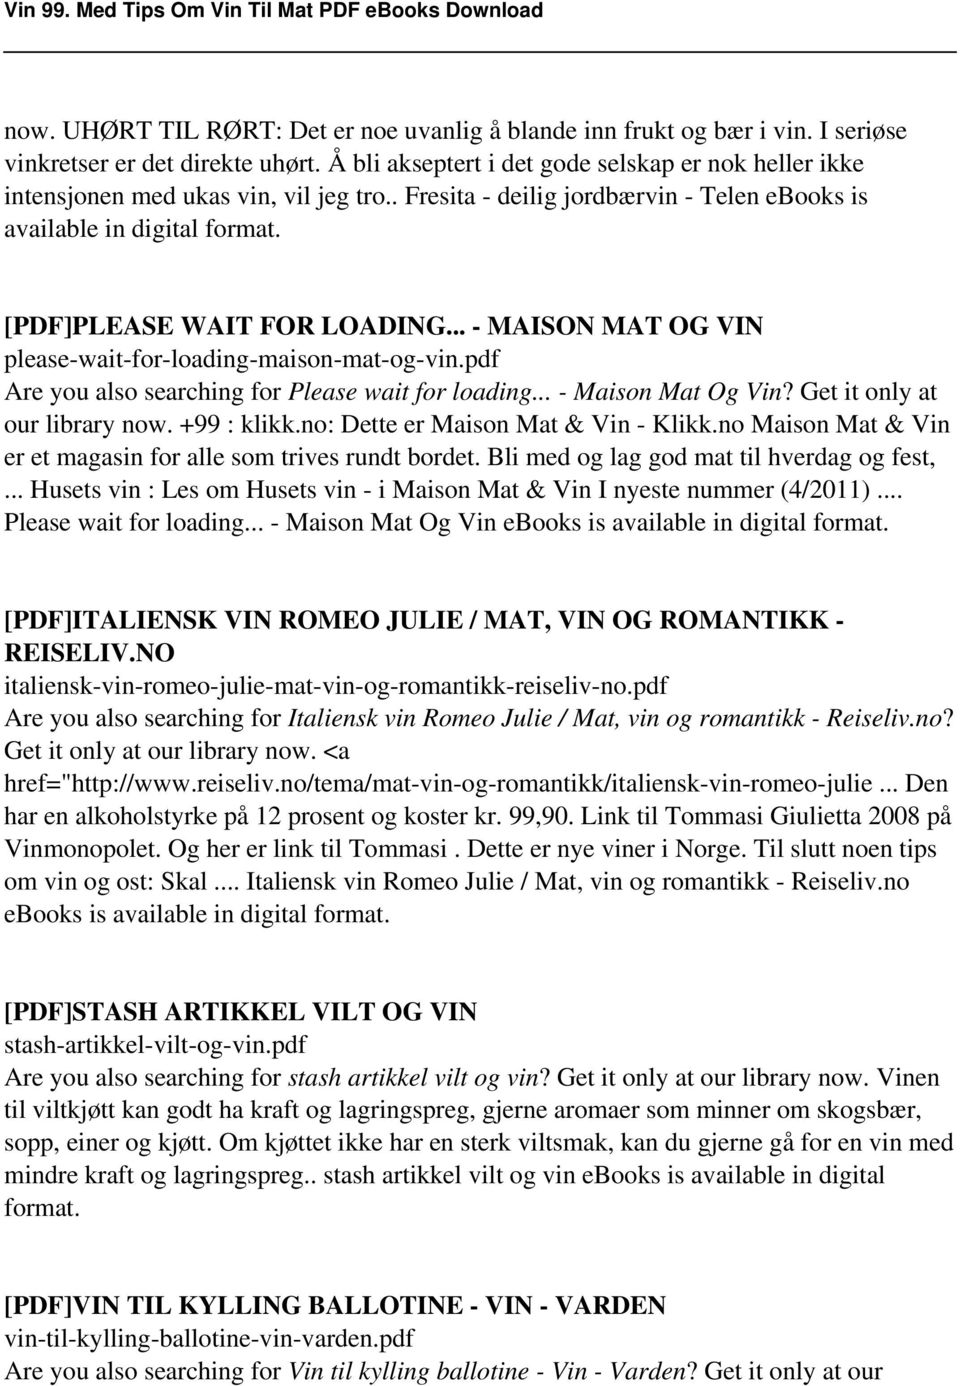 Vin 99. Med Tips Om Vin Til Mat - PDF Gratis nedlasting